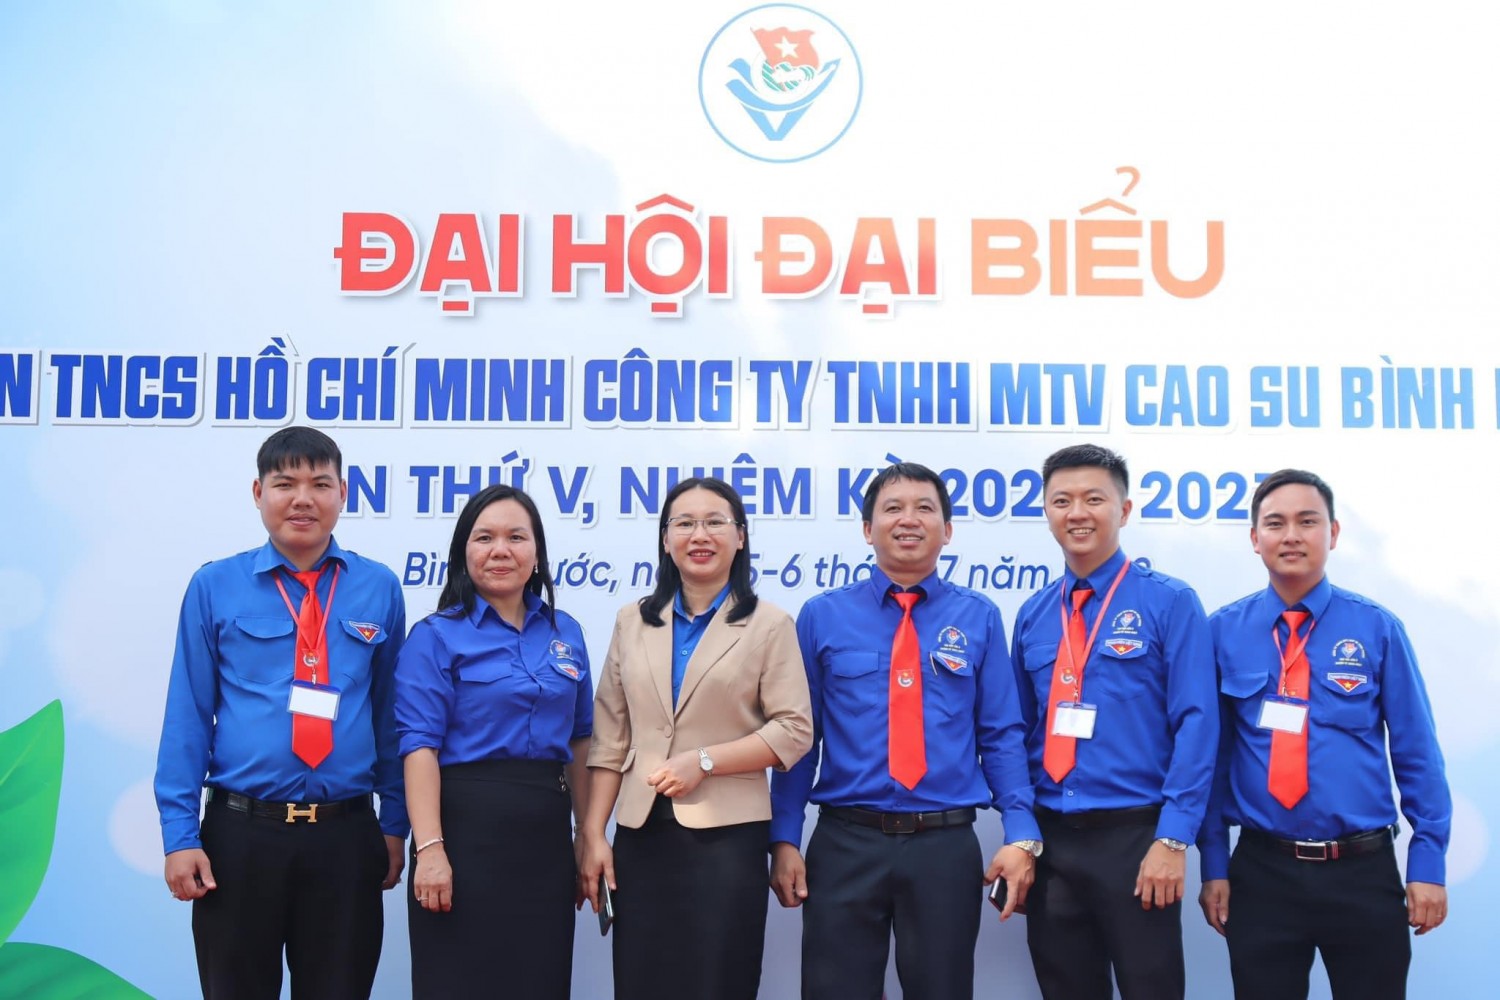 Đại hội đại biểu Đoàn TNCS Hồ Chí Minh Công ty TNHH MTV Cao su Bình Phước